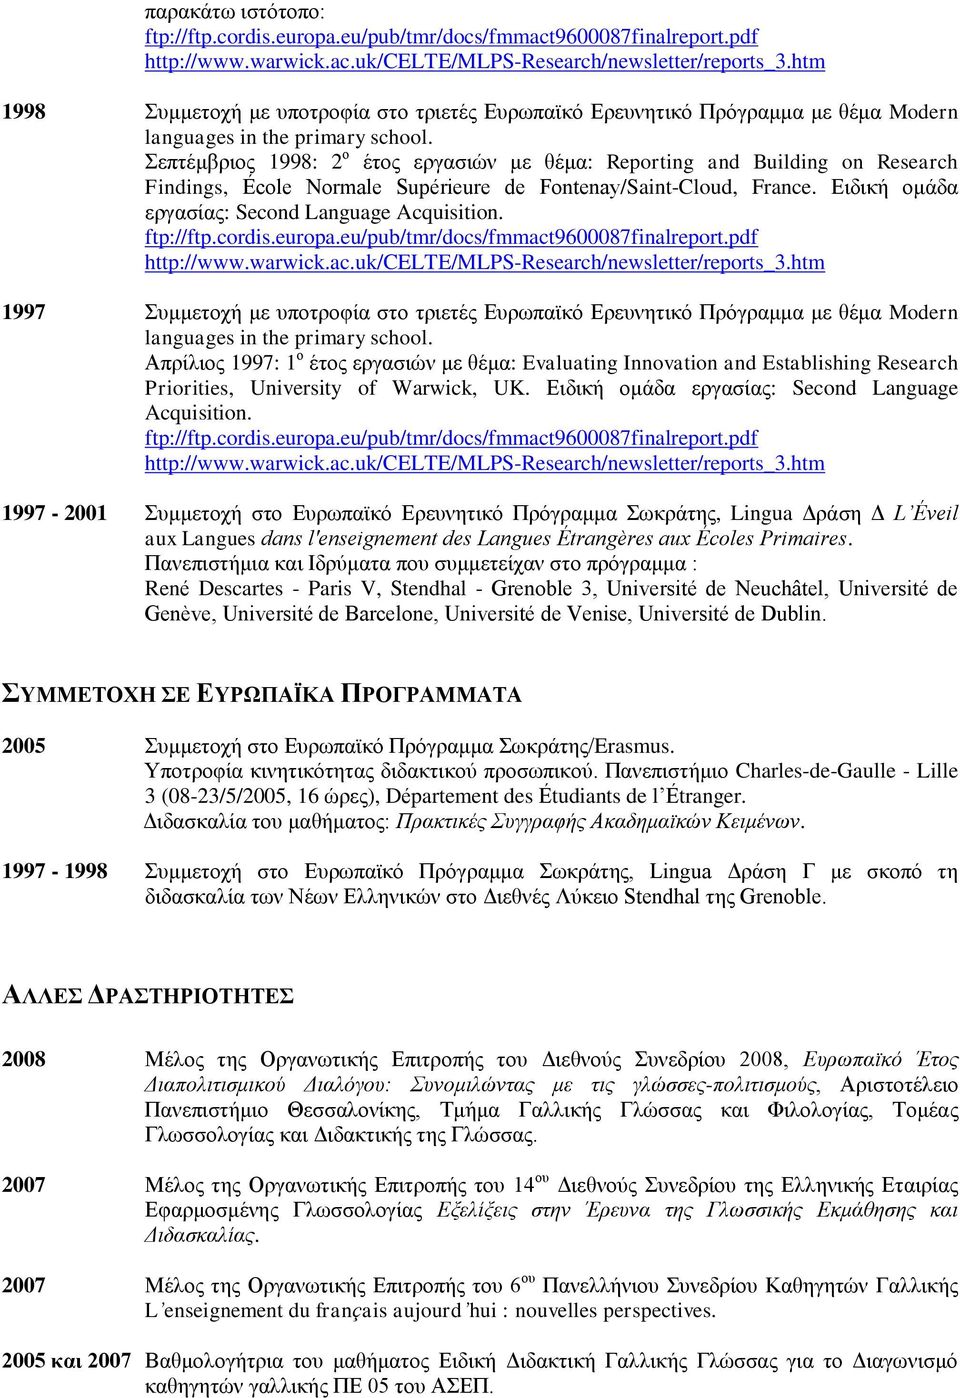 Σεπτέμβριος 1998: 2 ο έτος εργασιών με θέμα: Reporting and Building on Research Findings, École Normale Supérieure de Fontenay/Saint-Cloud, France. Ειδική ομάδα εργασίας: Second Language Acquisition.